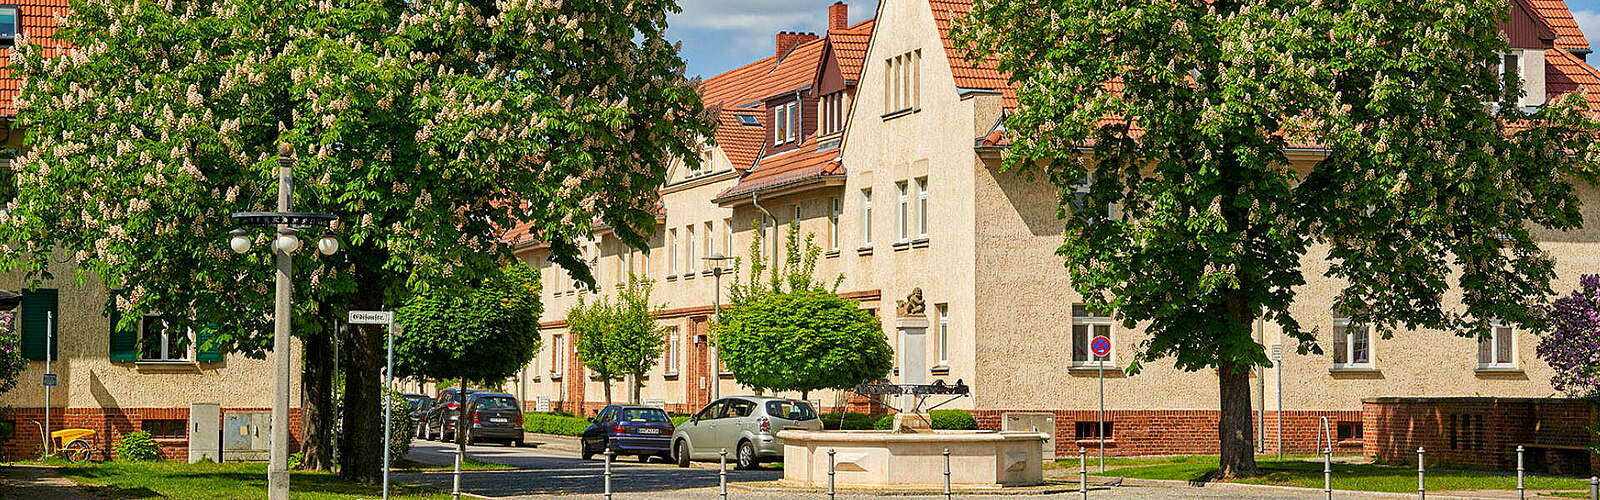 Edisonstraße im Rathenauviertel in Hennigsdorf,
        
    

        Foto: Stadt Hennigsdorf/Frank Liebke